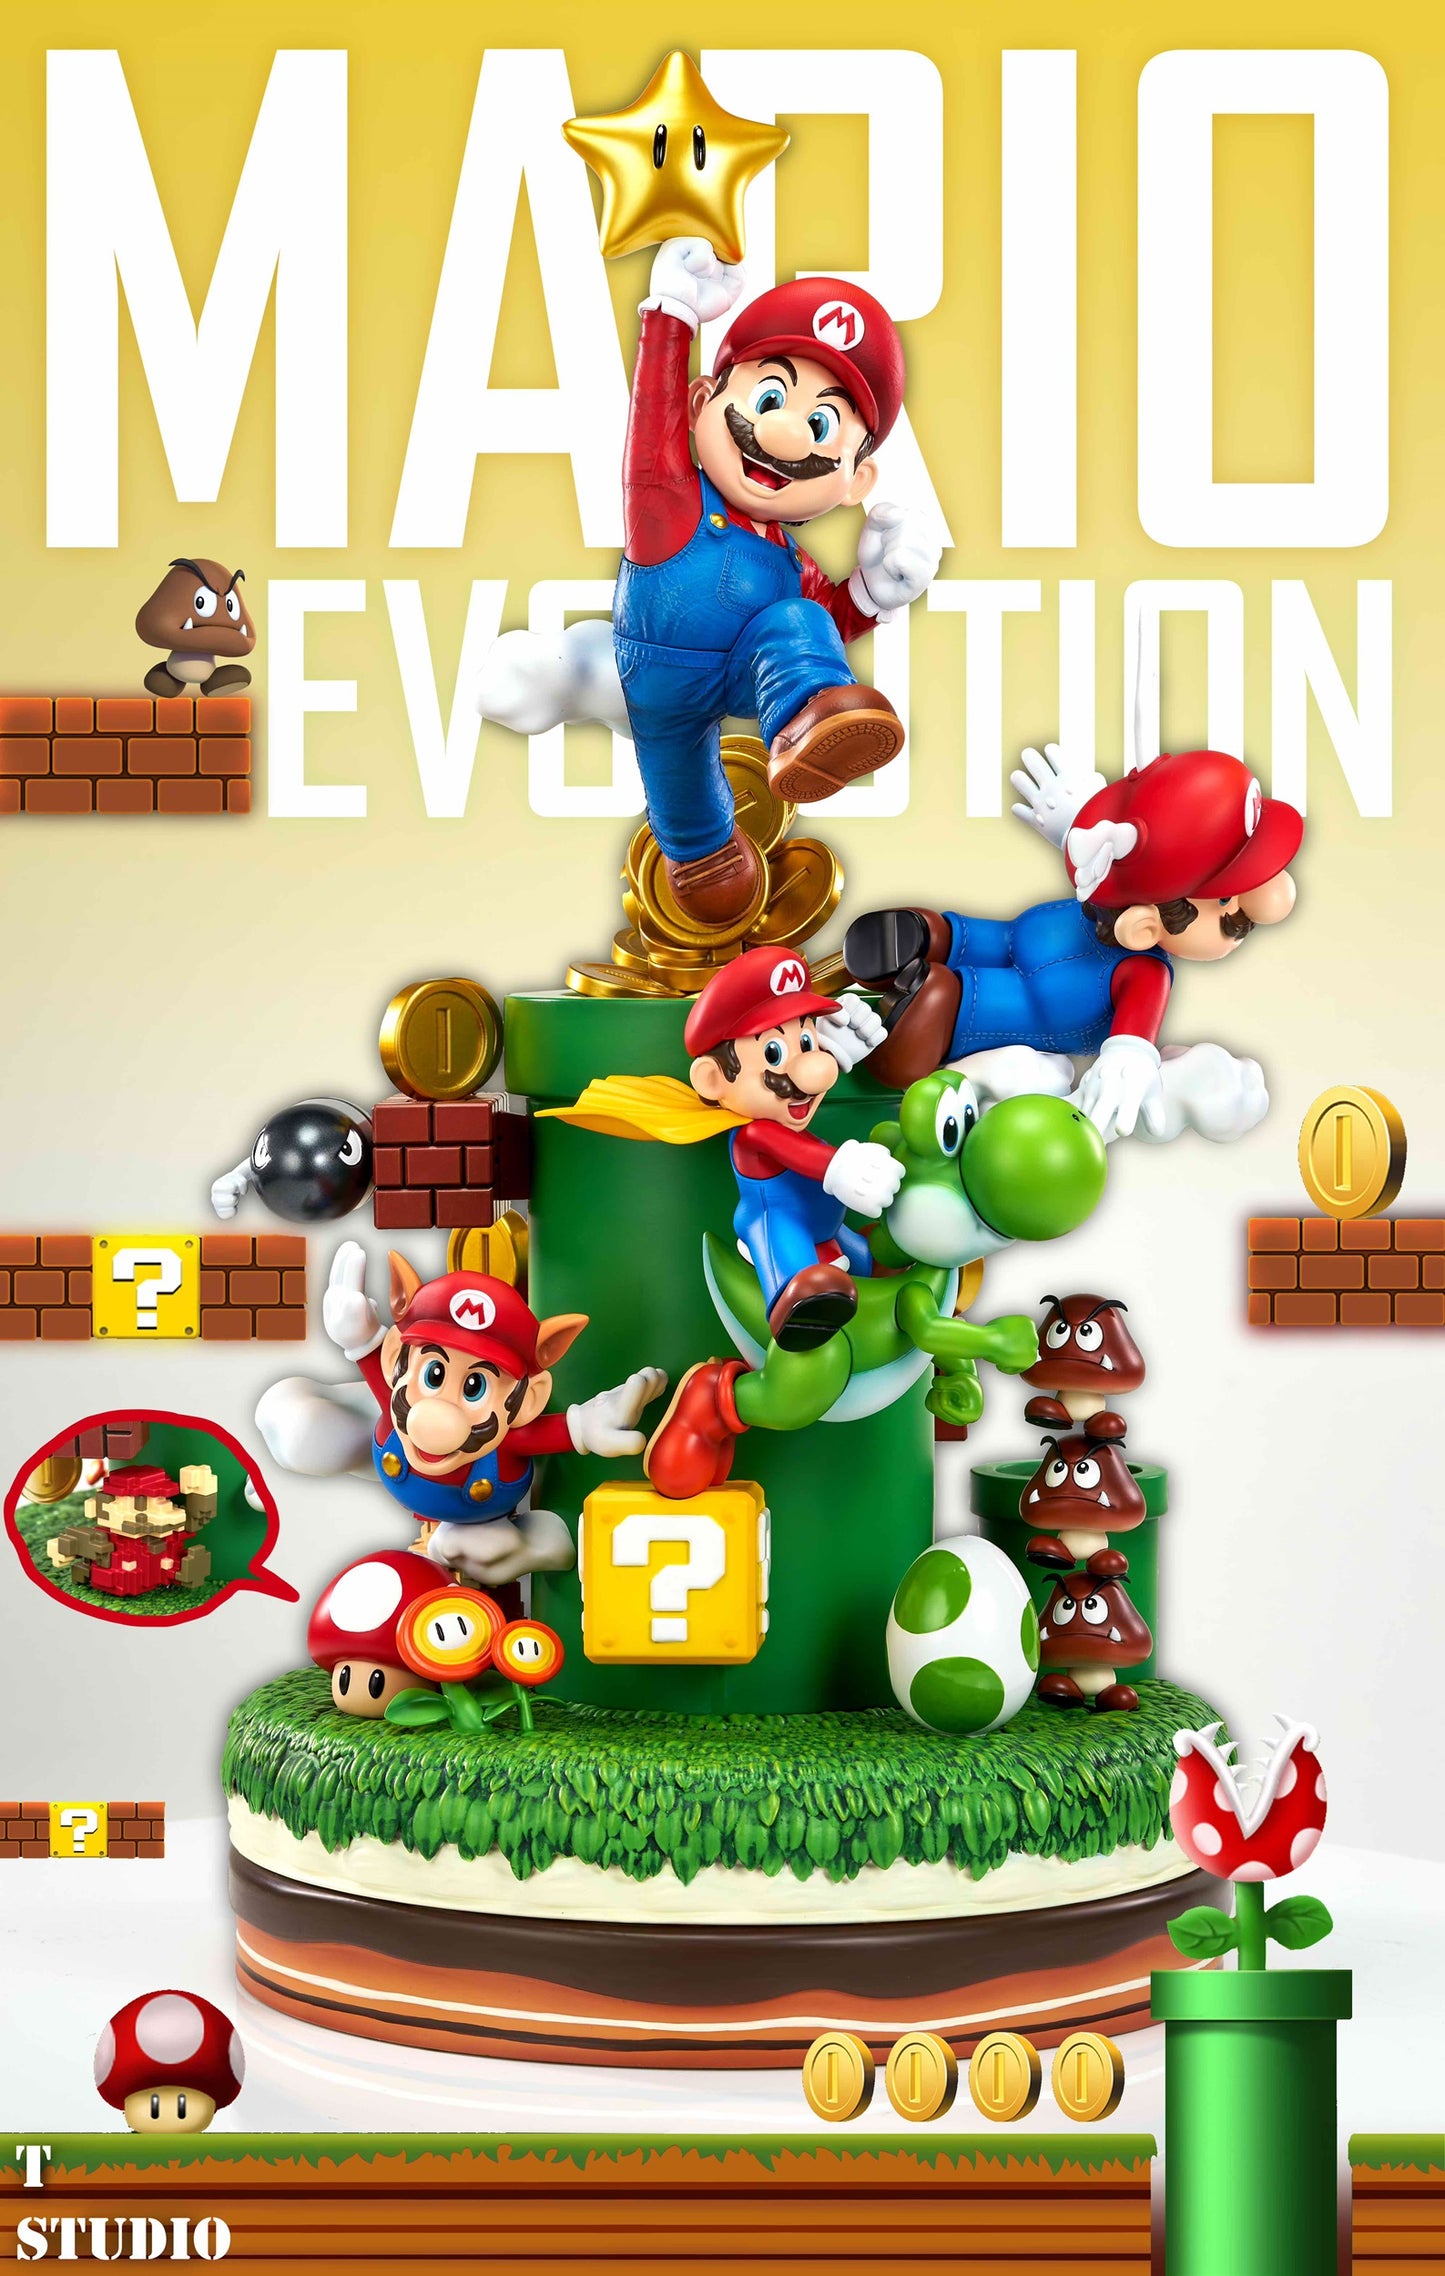 T Studio - Mario Evolution [PRE-ORDER CLOSED]